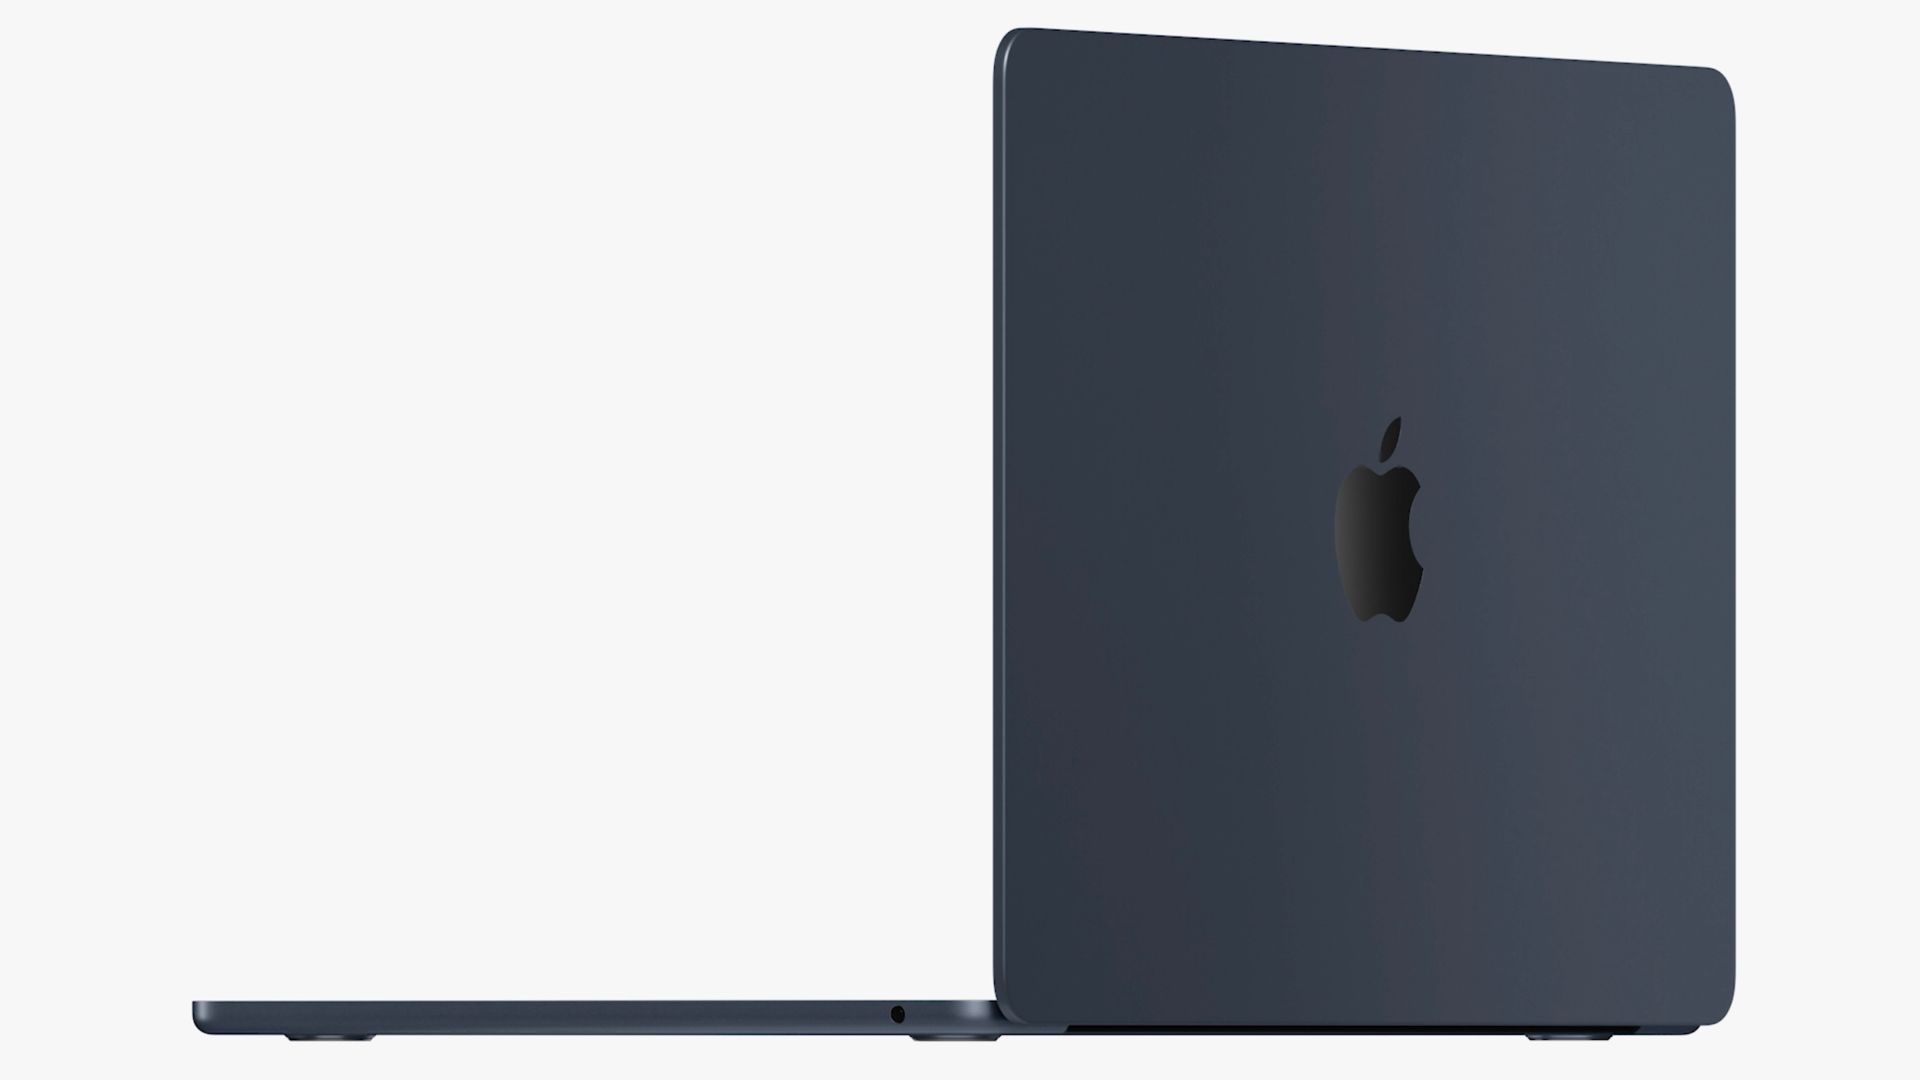 New Macbook Air thin design